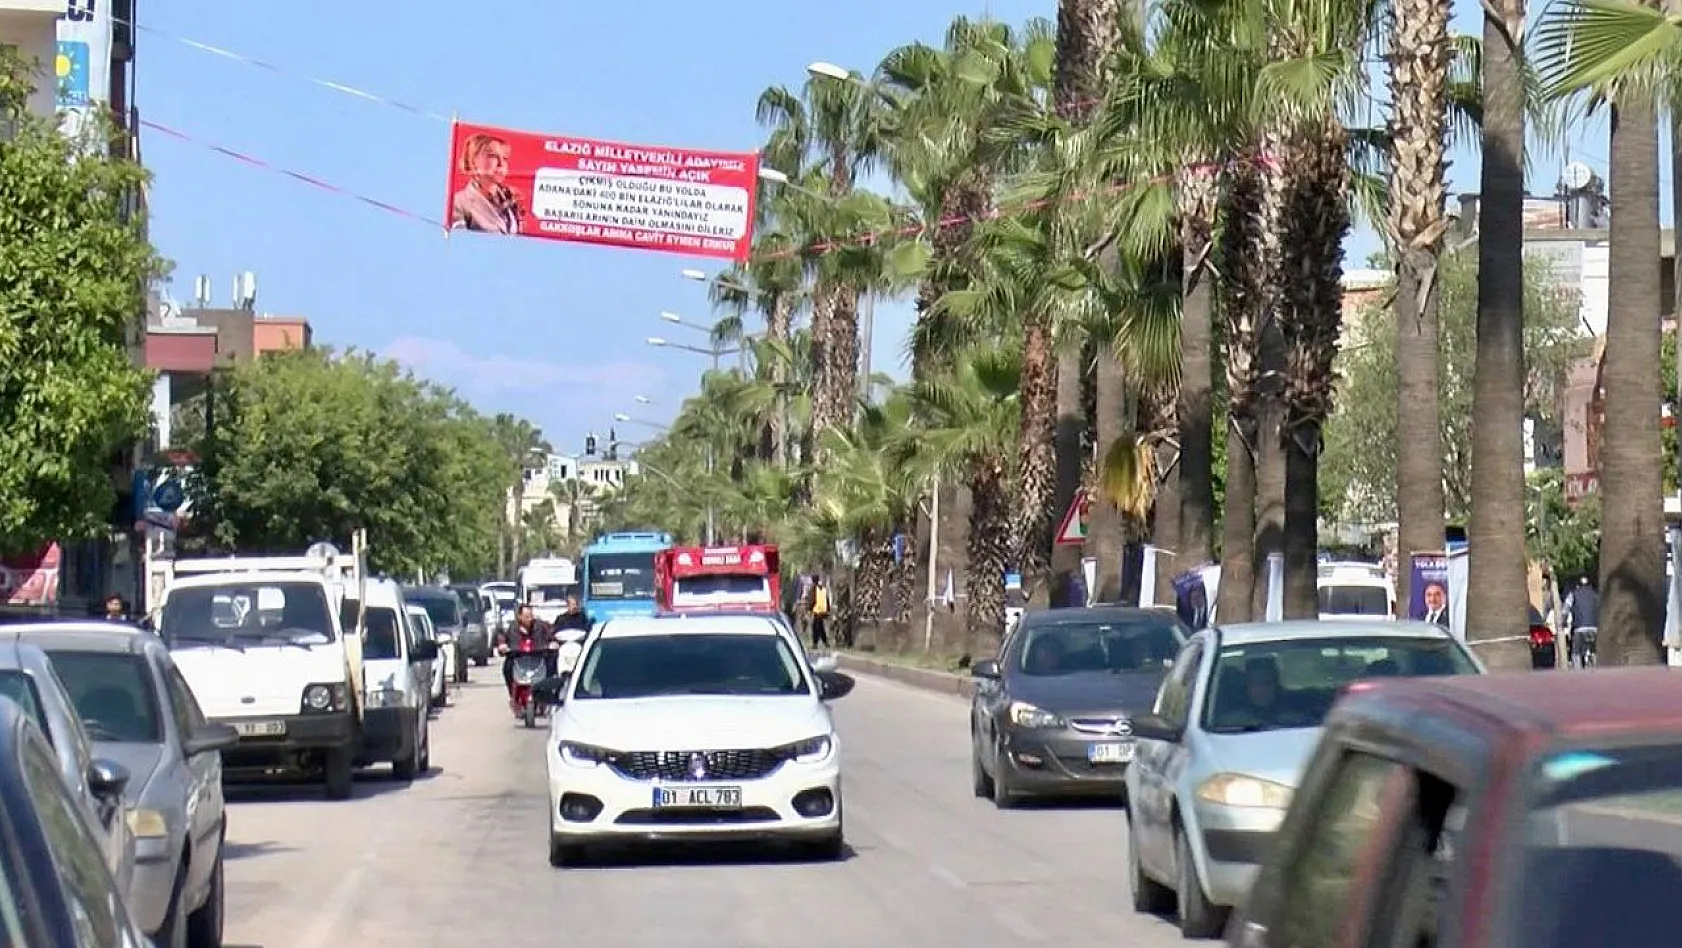 Adana'daki Elazığlılar Adana Caddelerine Yasemin Açık'ın Afişlerini Astılar